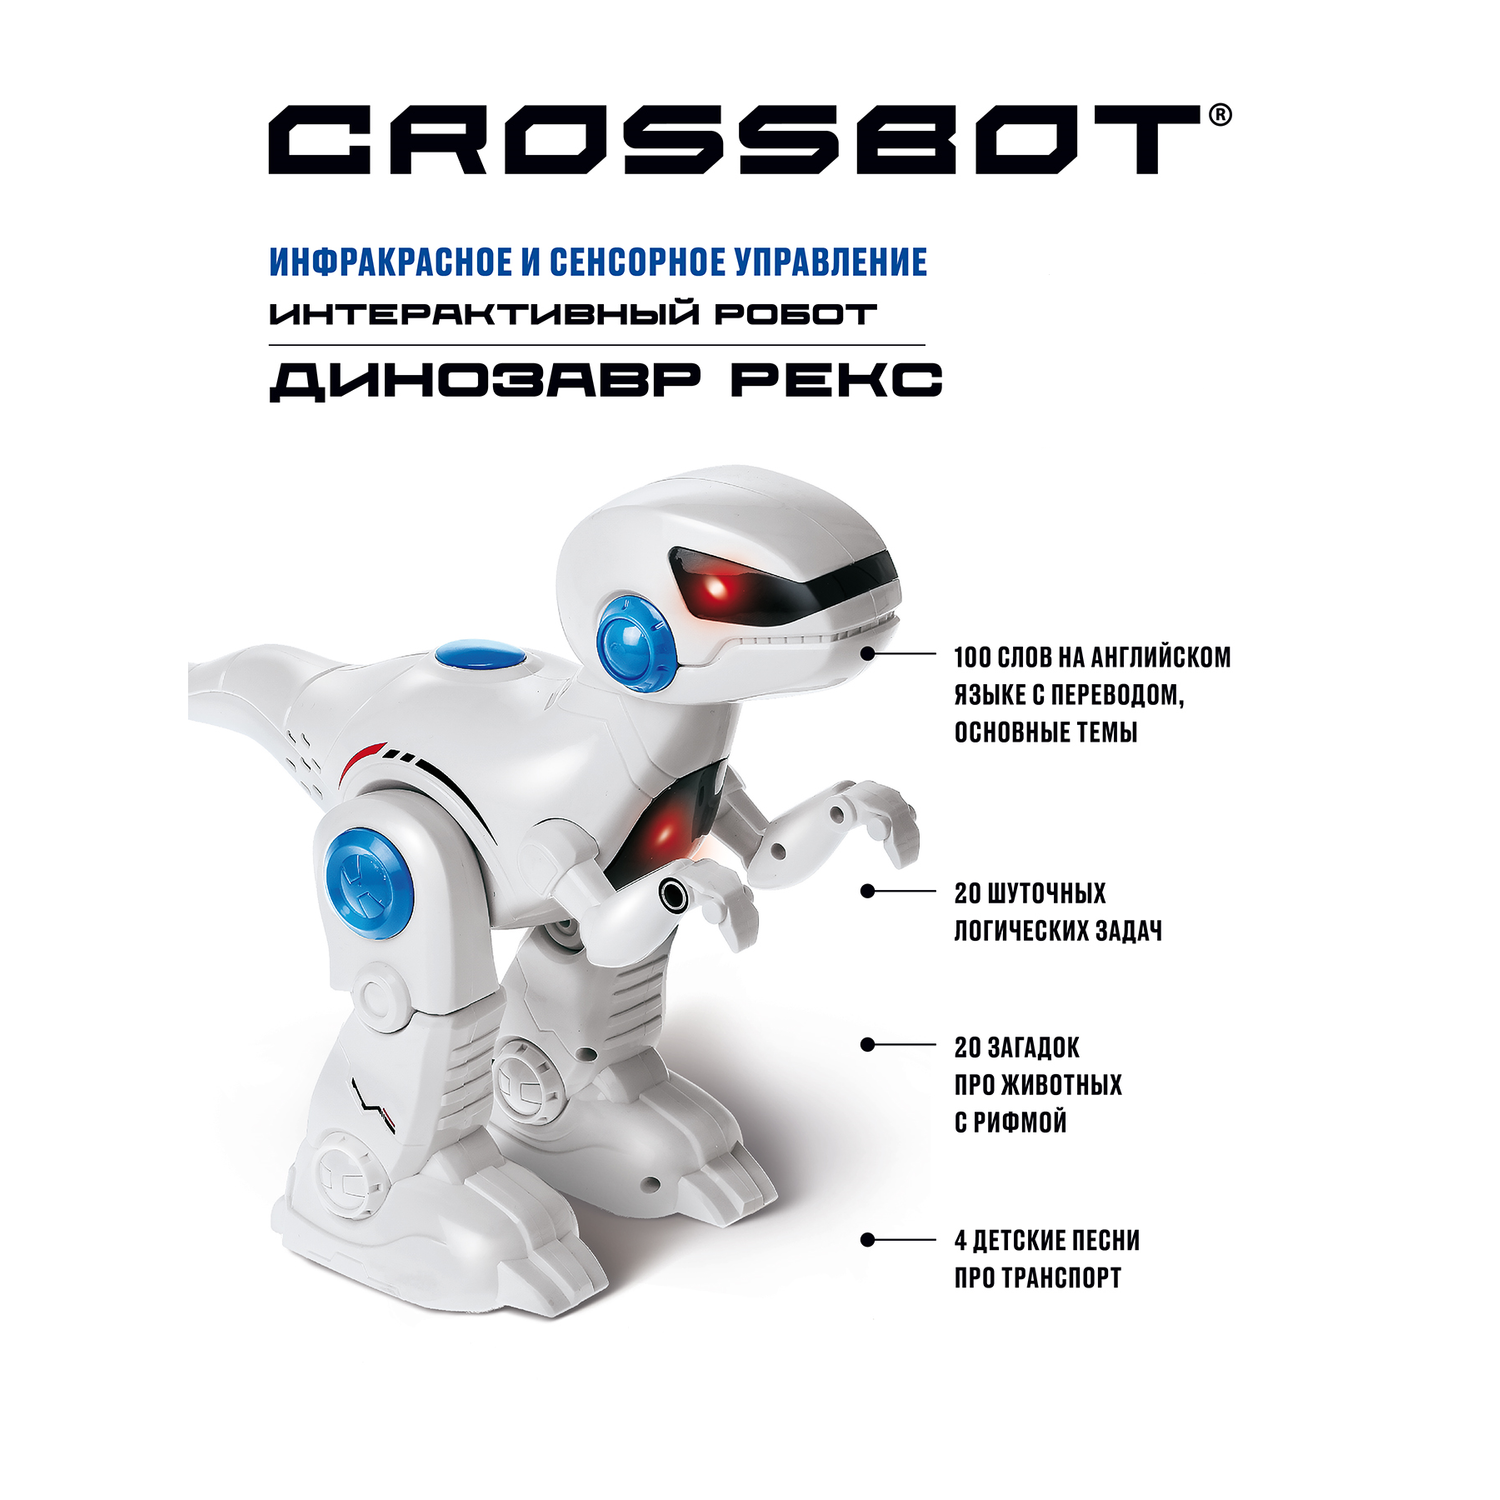 Робот на пульте управления CROSSBOT игрушка Динозавр Рекс - фото 1